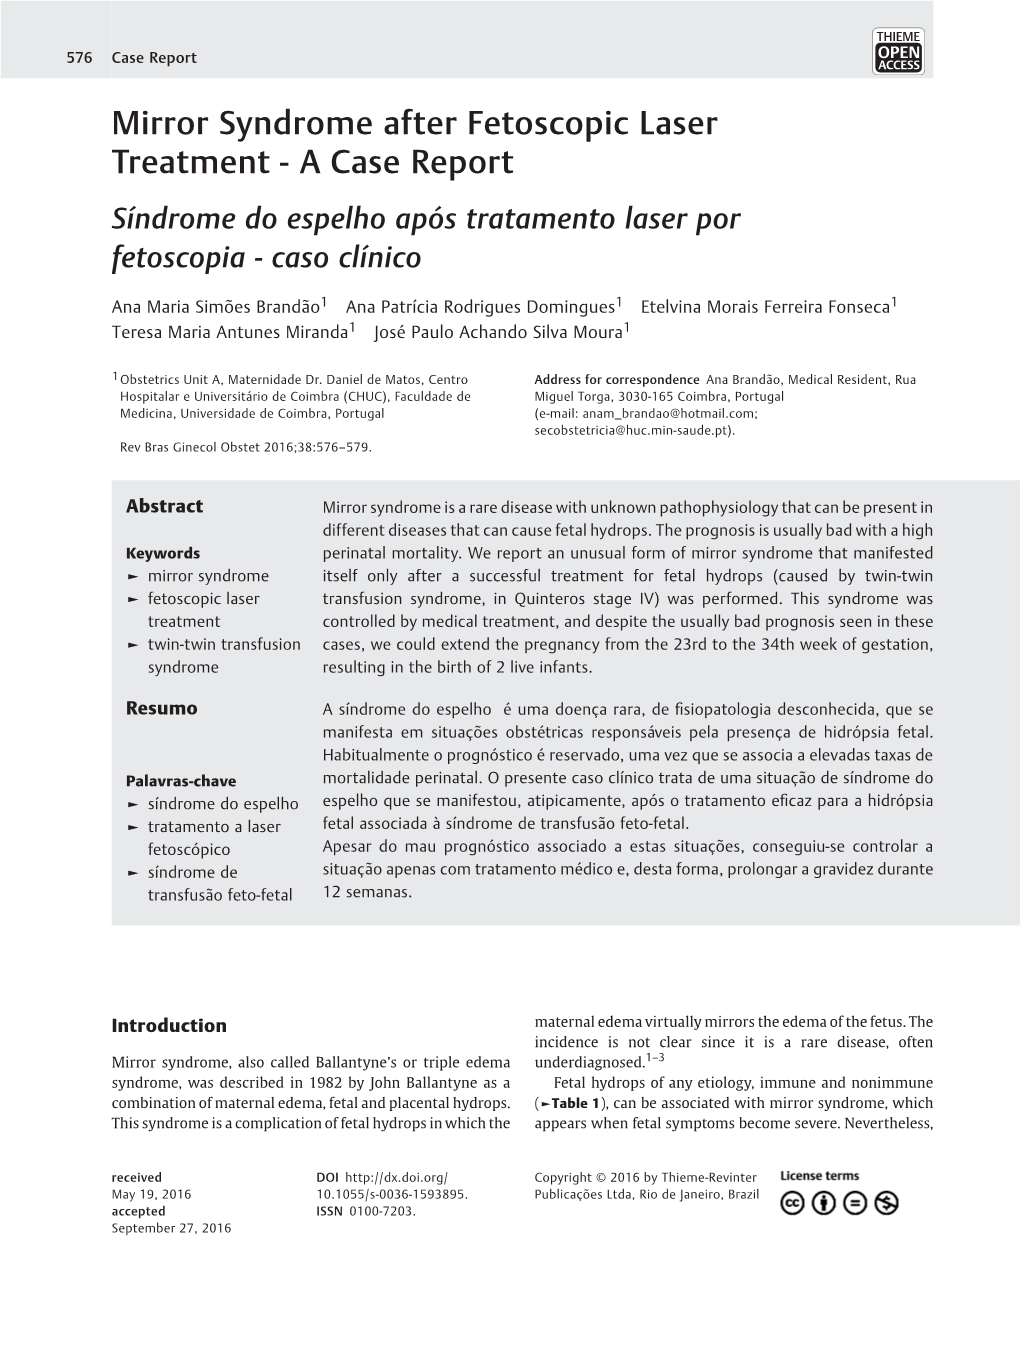 Mirror Syndrome After Fetoscopic Laser Treatment - a Case Report Síndrome Do Espelho Após Tratamento Laser Por Fetoscopia - Caso Clínico